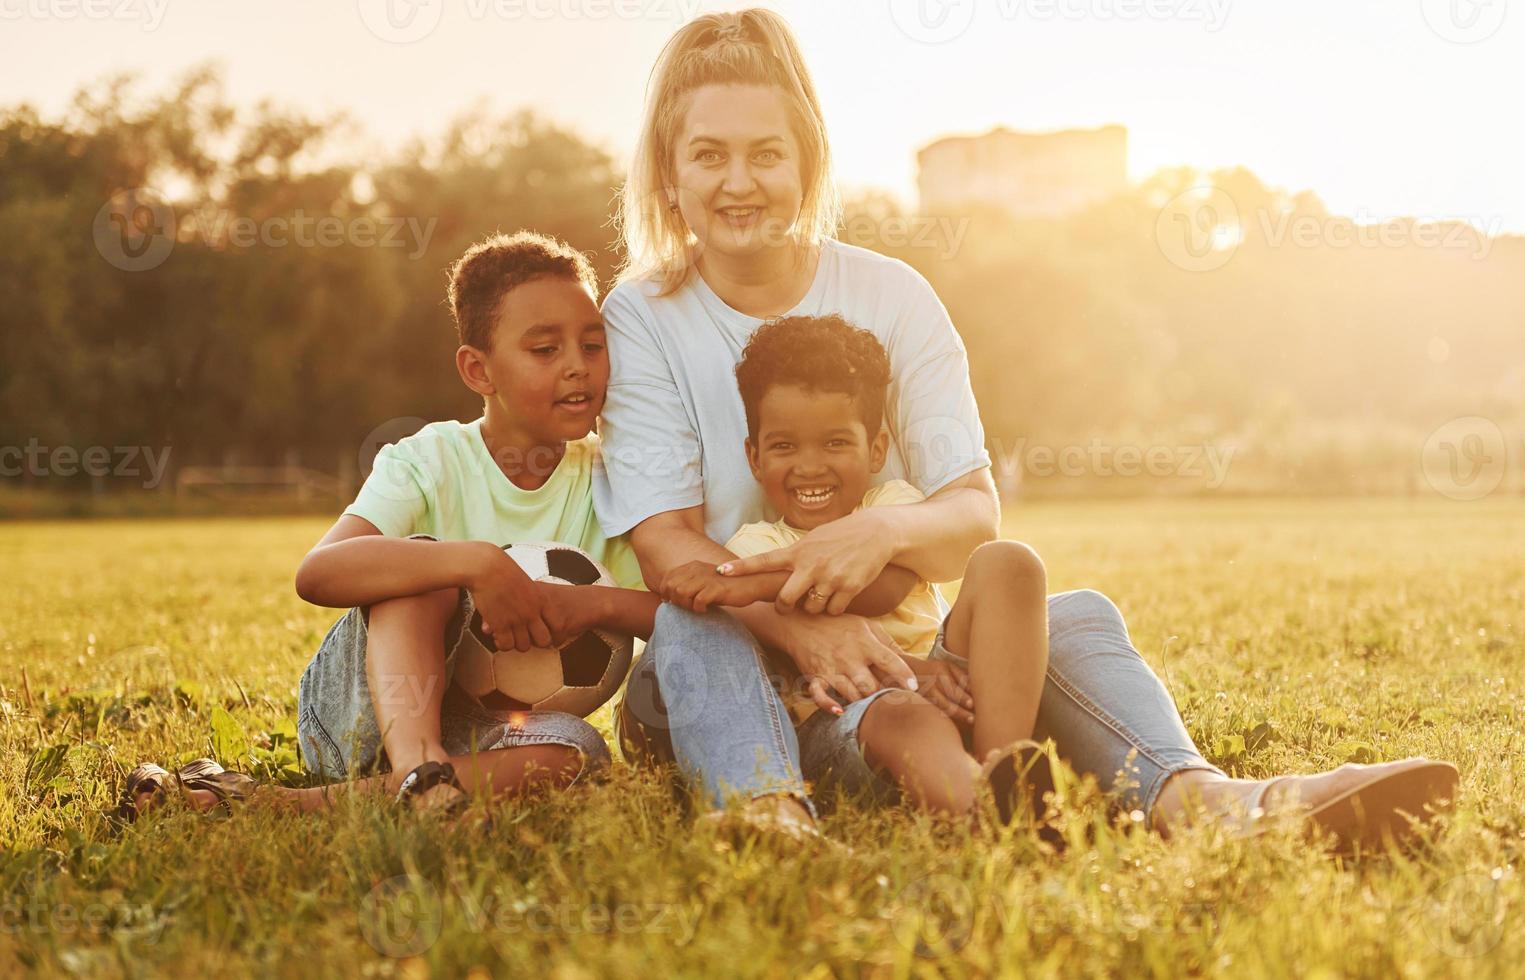 une femme adulte est assise avec deux enfants noirs sur le terrain pendant la journée d'été photo